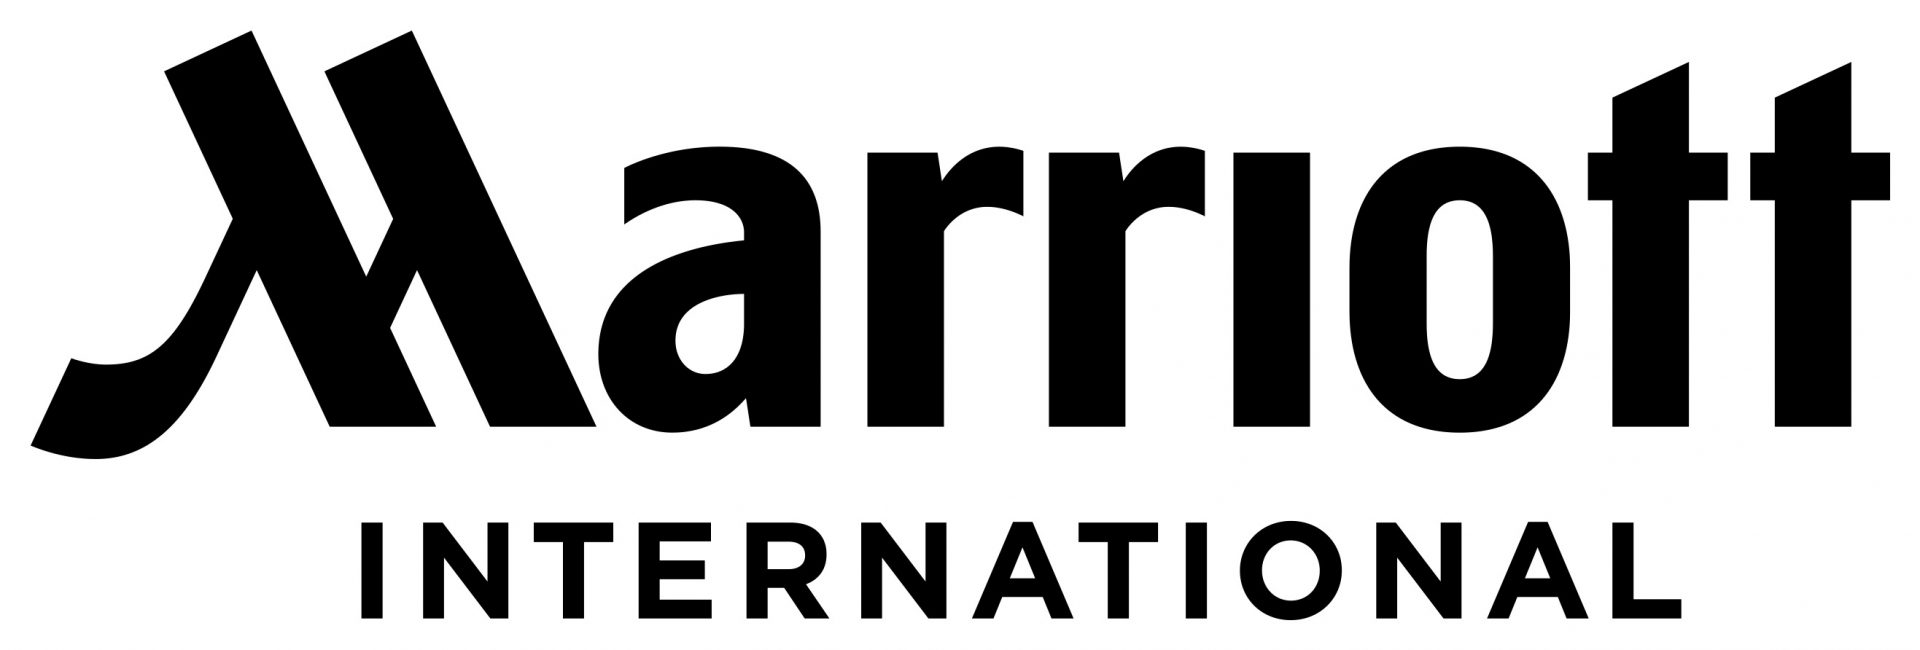 Marriott-Int-black-logo